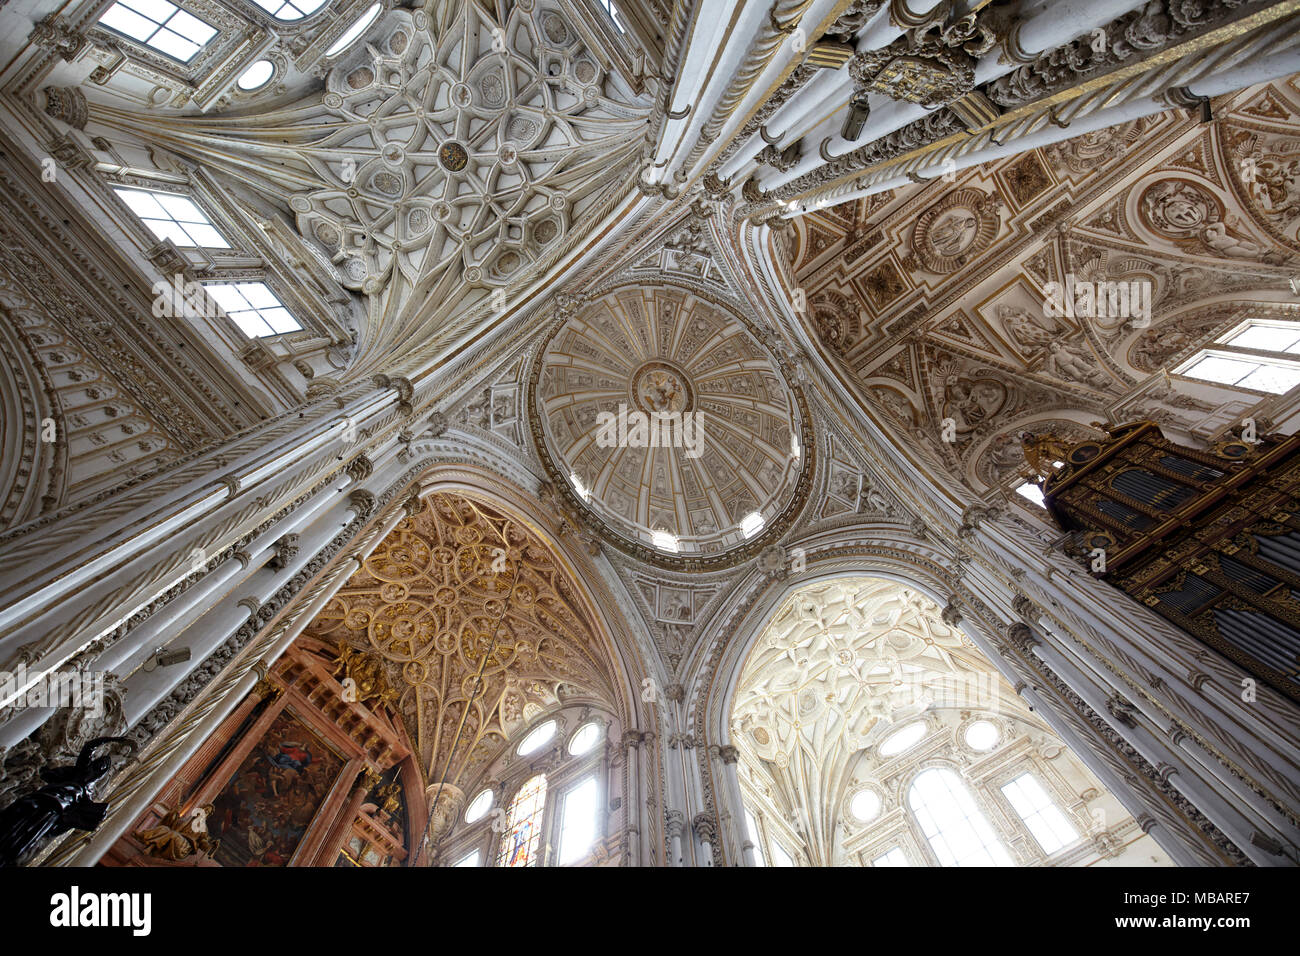 Le plafond de la mosquée-cathédrale de Cordoue, Andalousie, Espagne Banque D'Images